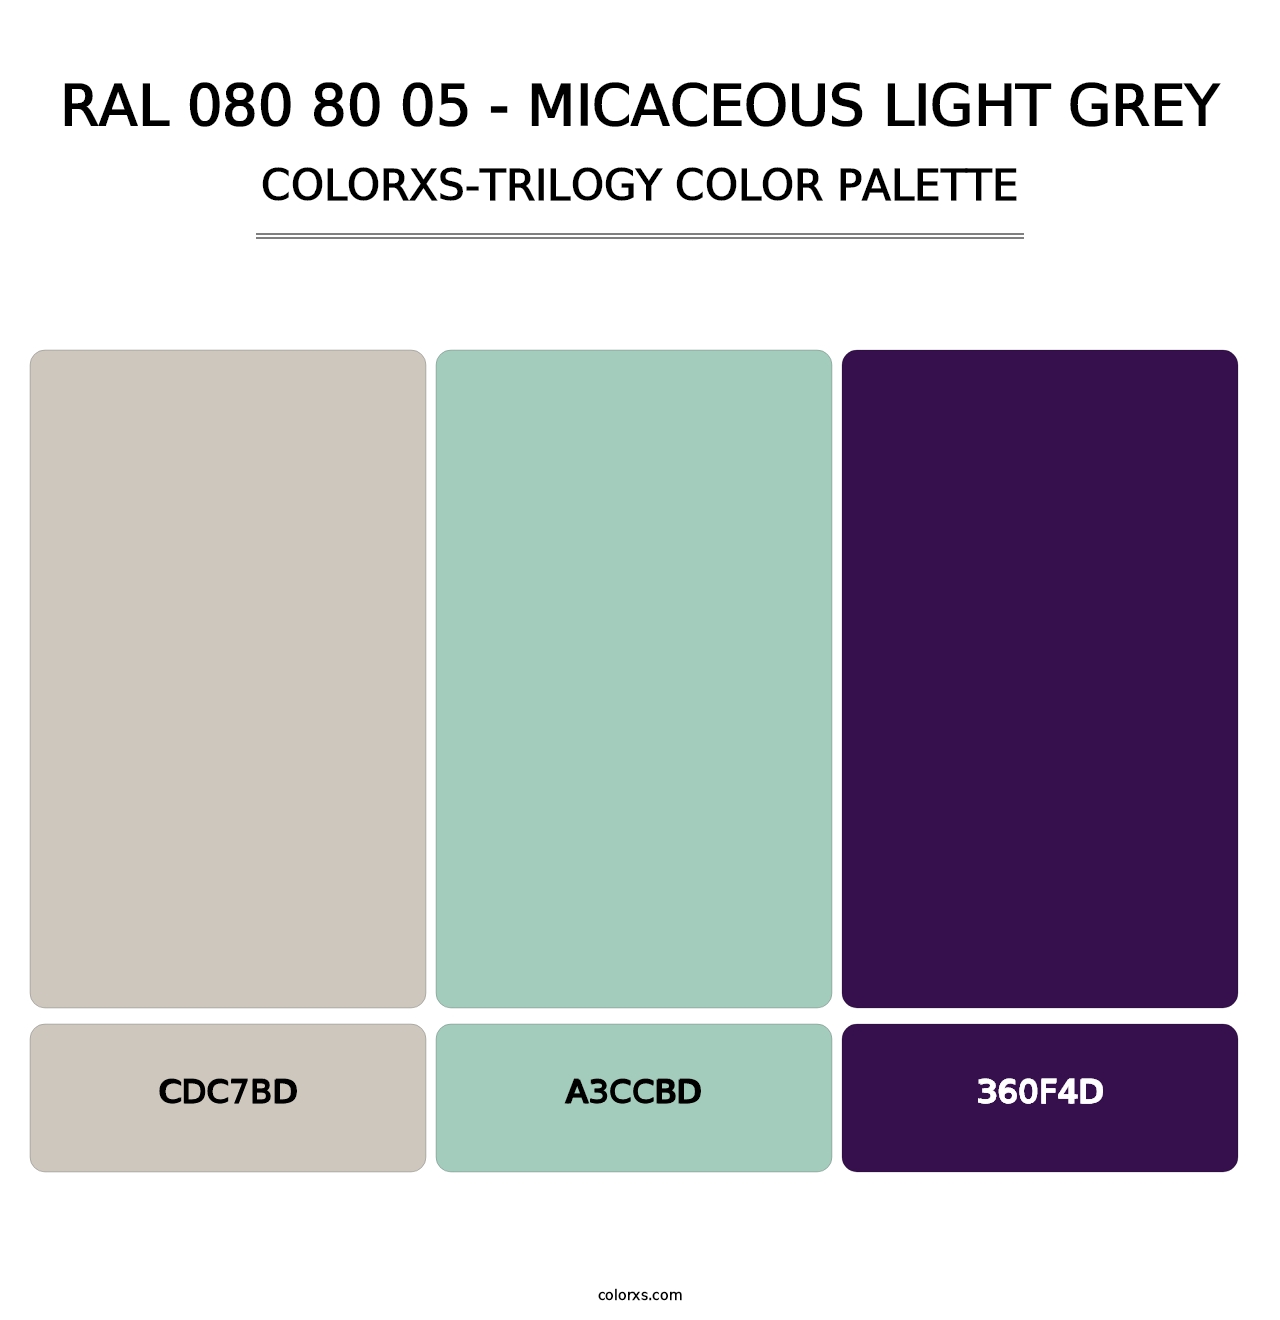 RAL 080 80 05 - Micaceous Light Grey - Colorxs Trilogy Palette